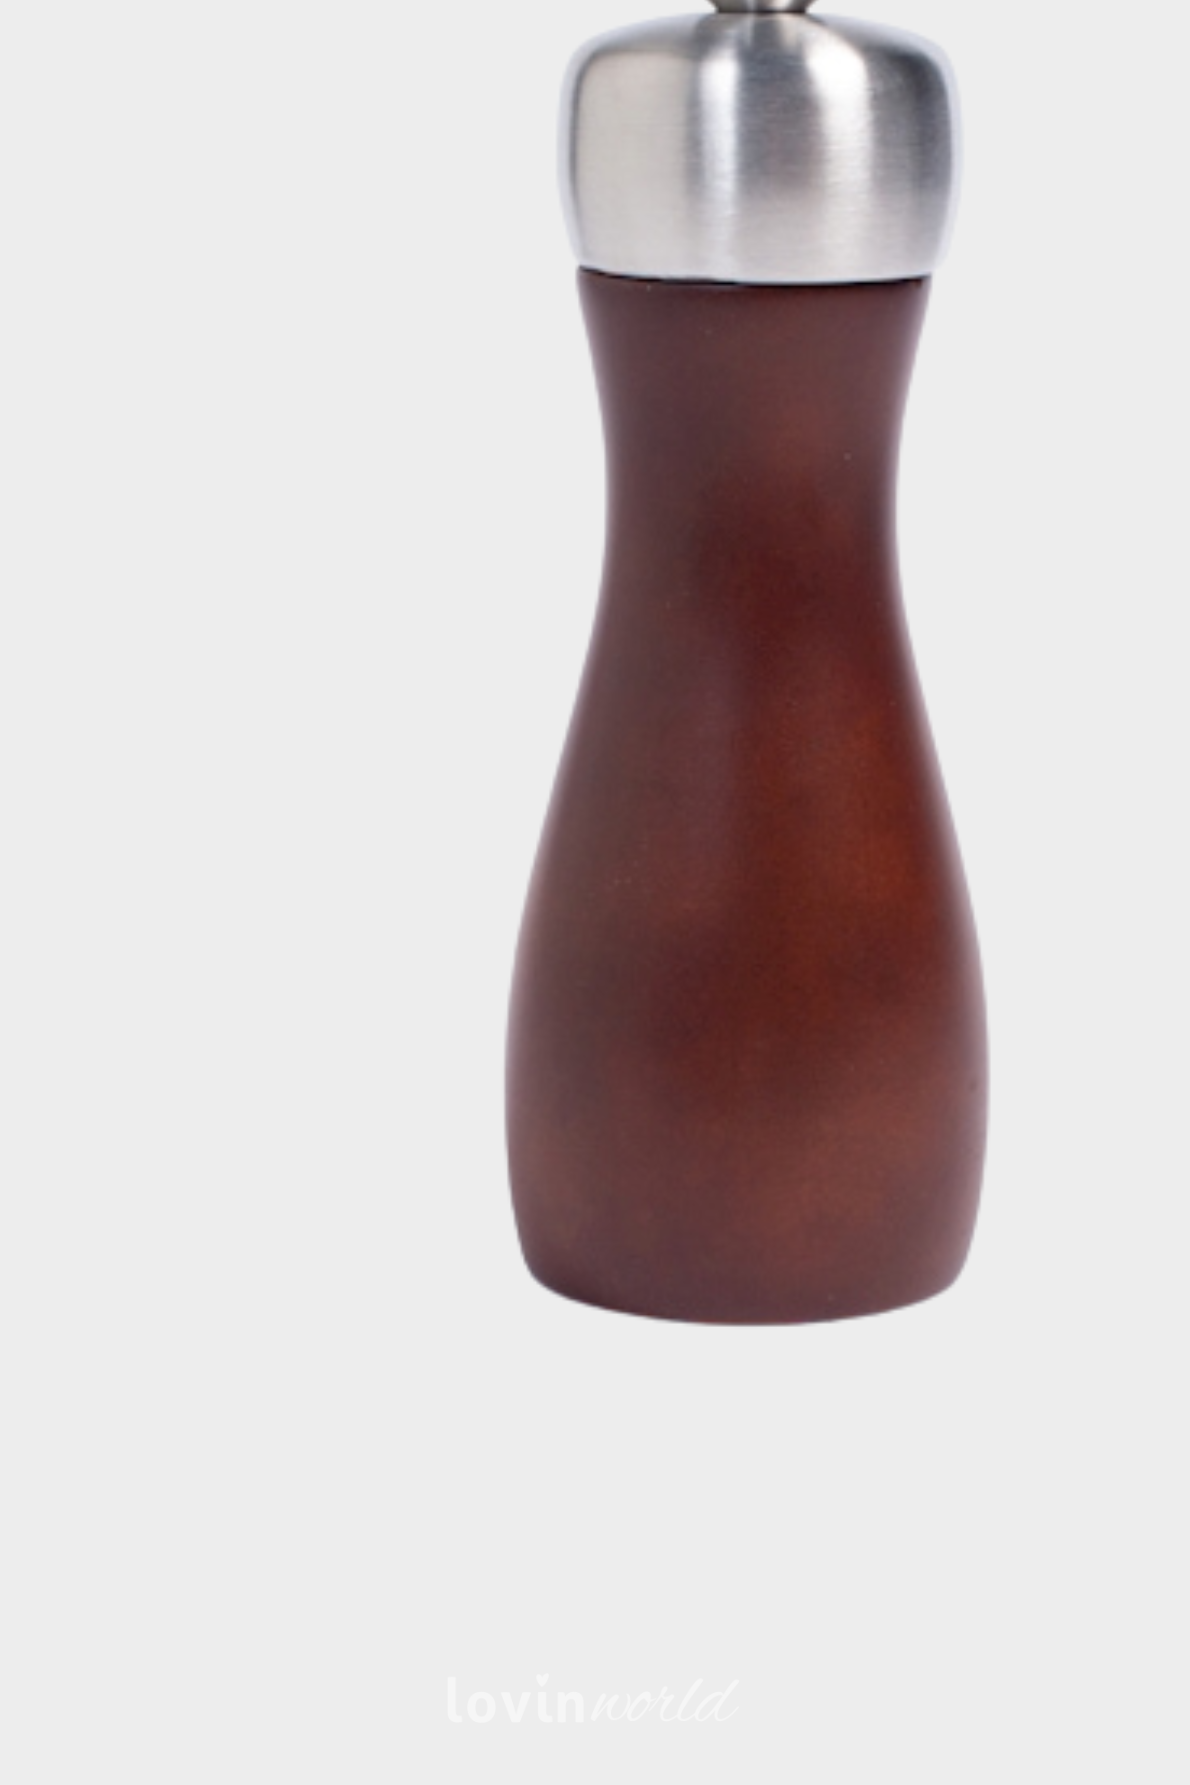 Macinasale/pepe in legno scuro con macina in ceramica 16 cm.-3